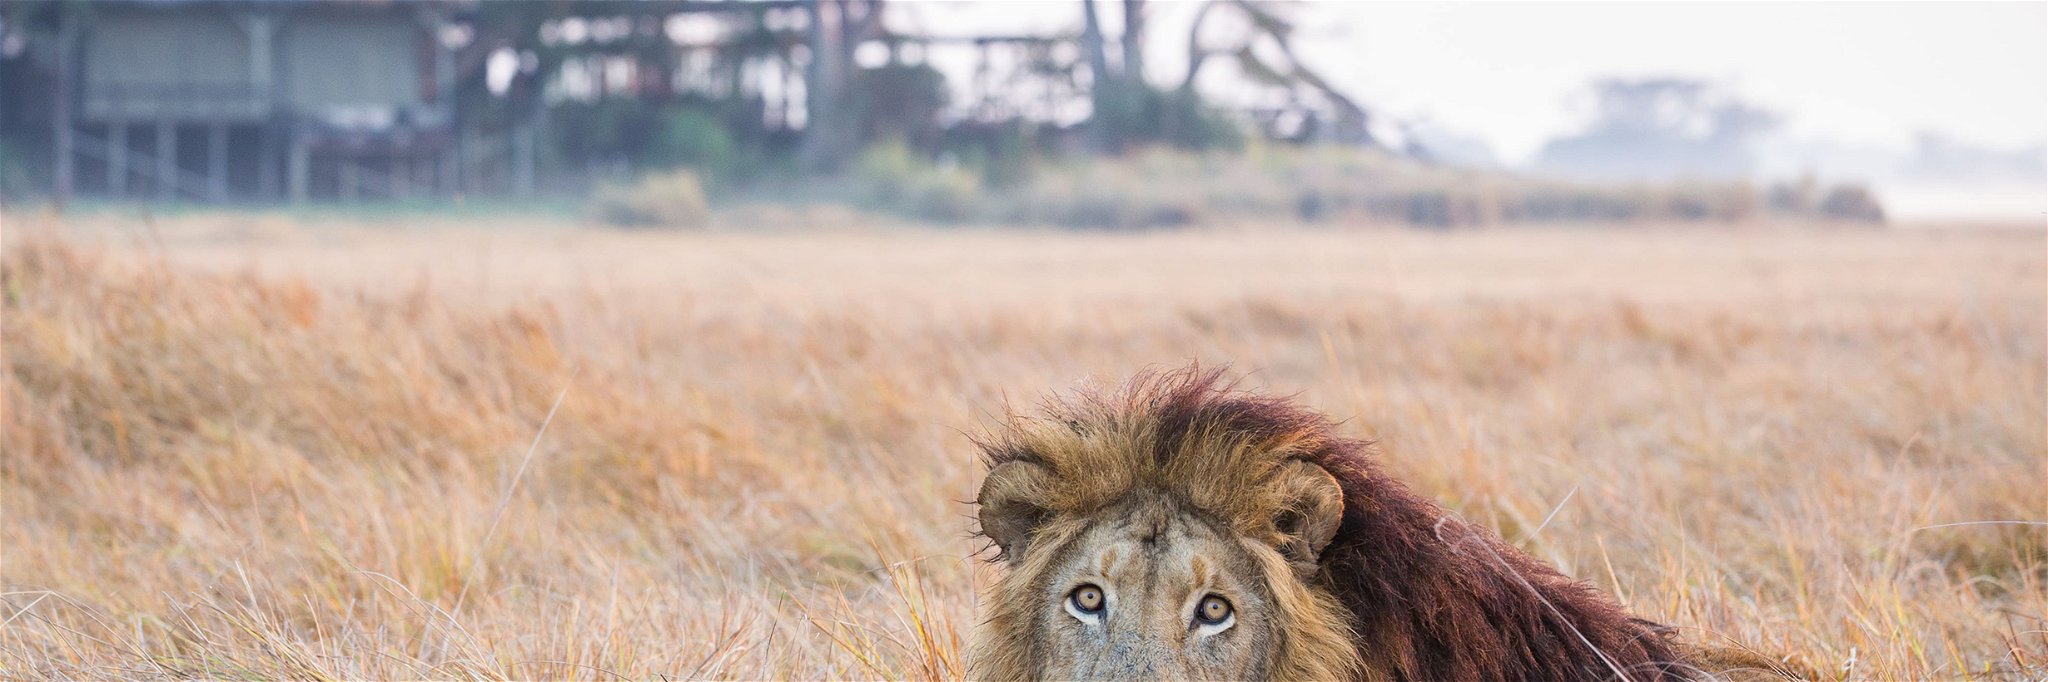 Ein Löwe vor dem Shumba Camp in Sambia.